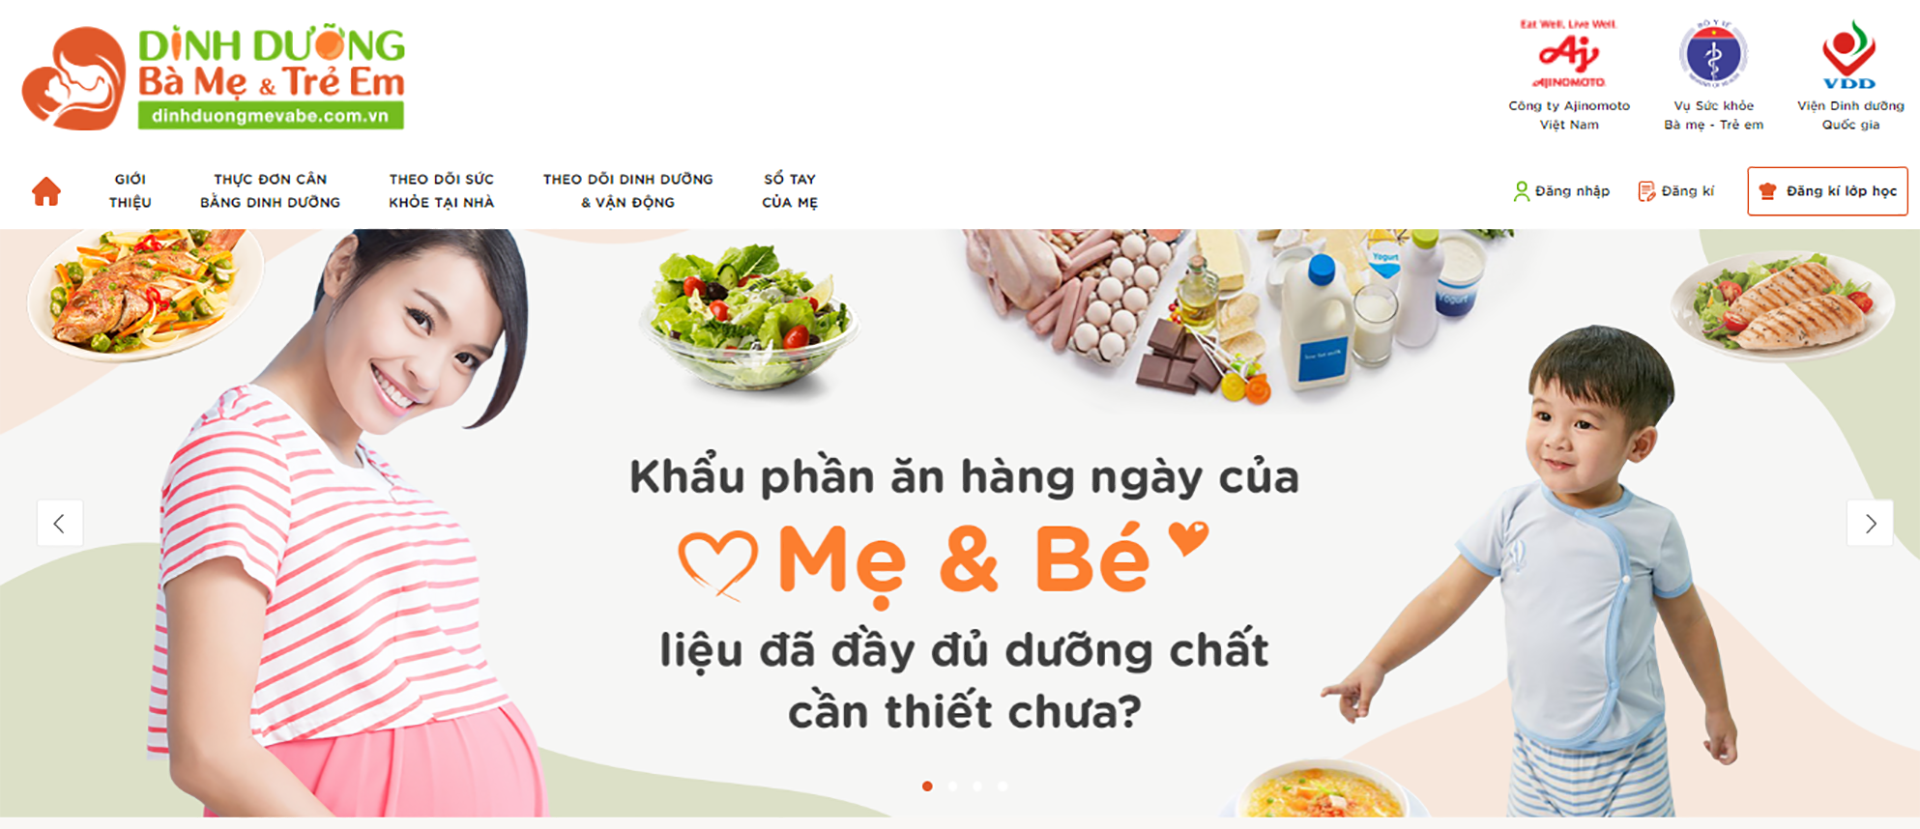 Phần mềm Chương trình Dinh dưỡng Bà mẹ và Trẻ em tại website www.dinhduongmevabe.com.vn.